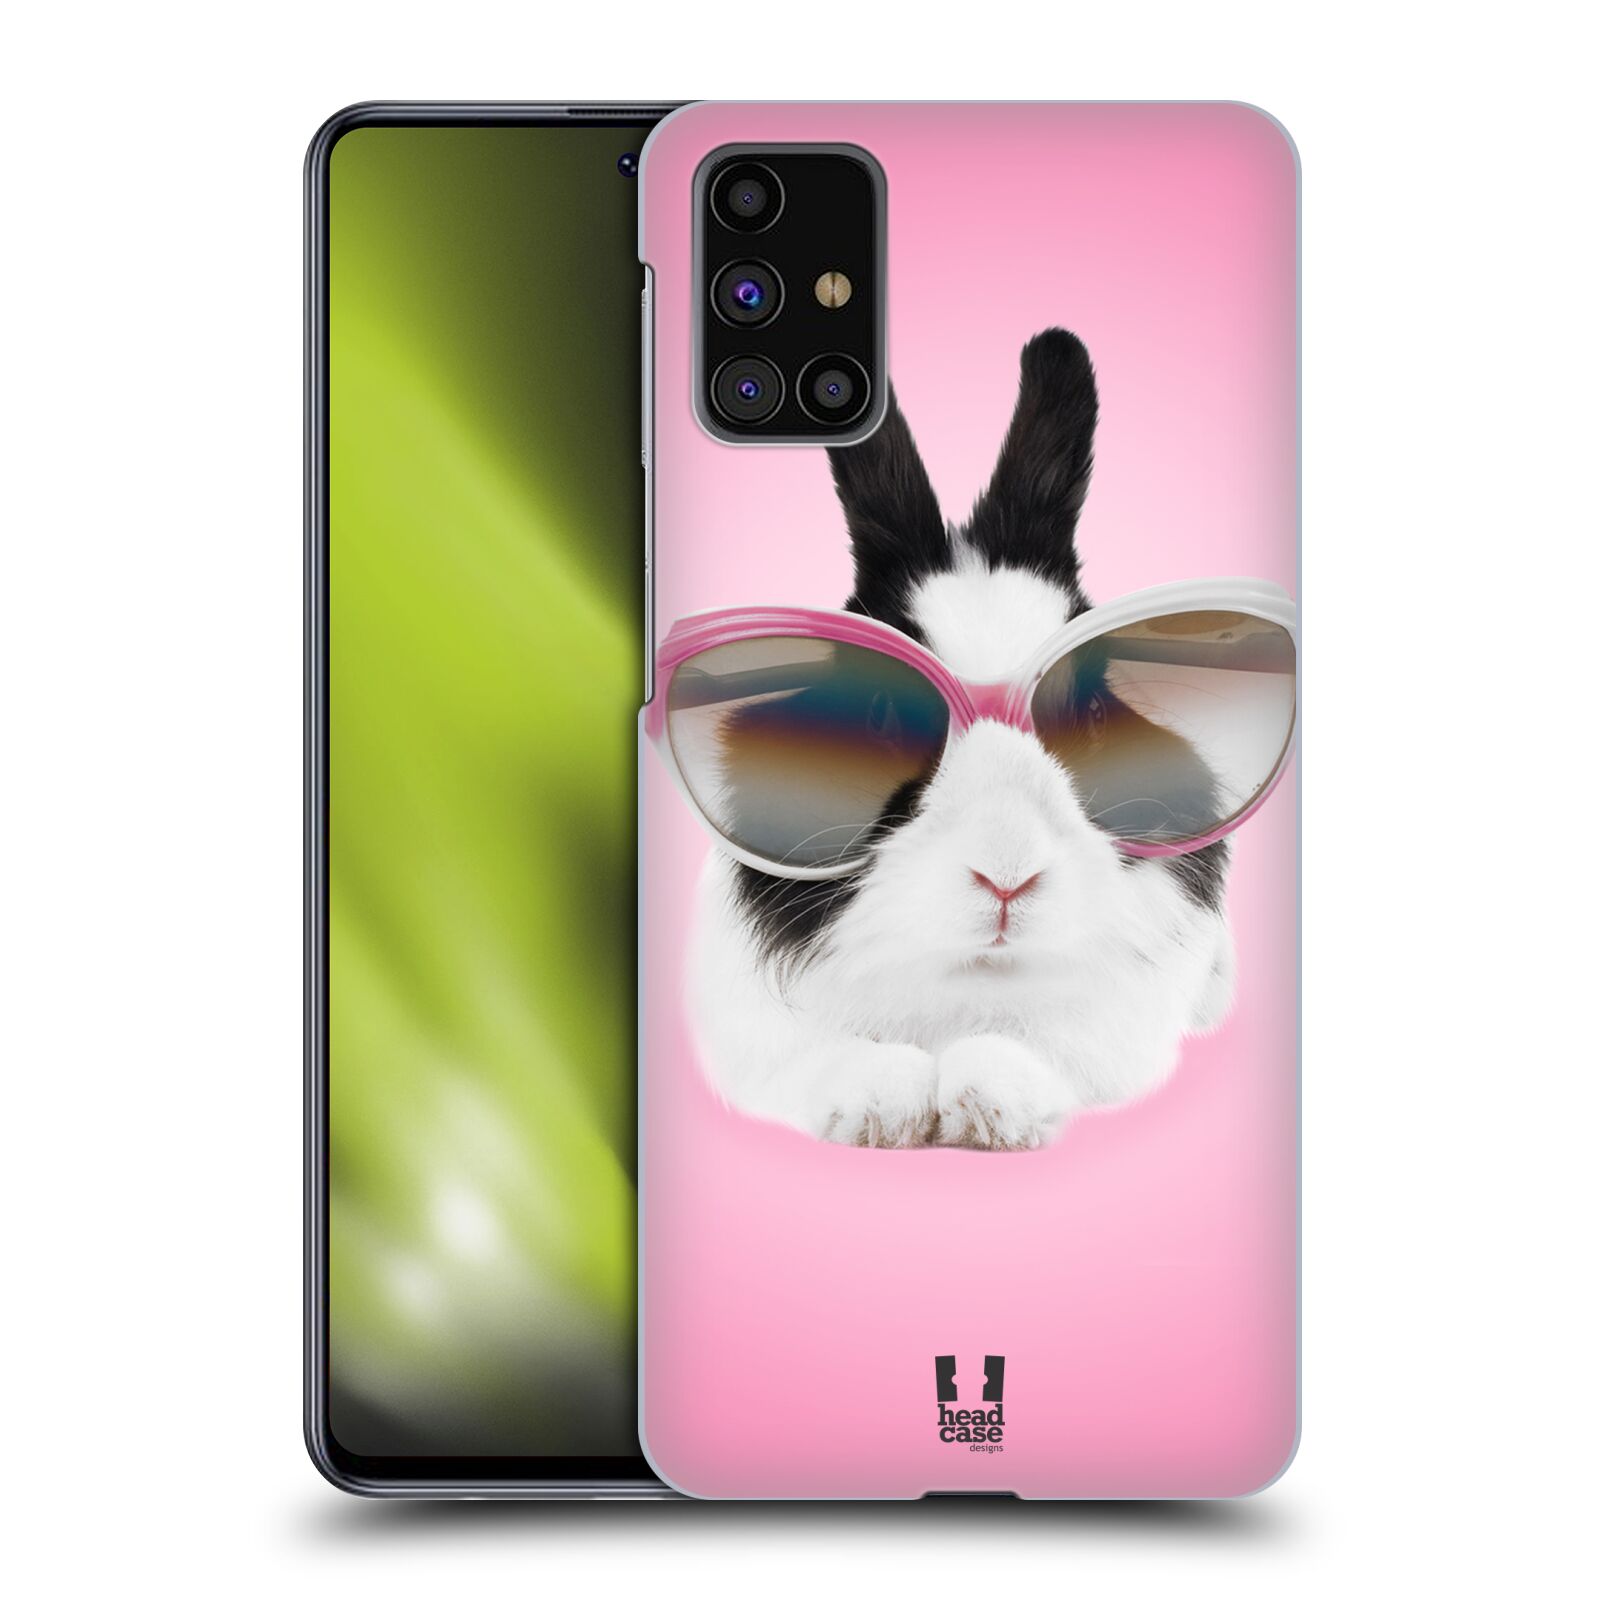 Plastový obal HEAD CASE na mobil Samsung Galaxy M31s vzor Legrační zvířátka roztomilý králíček s brýlemi růžová